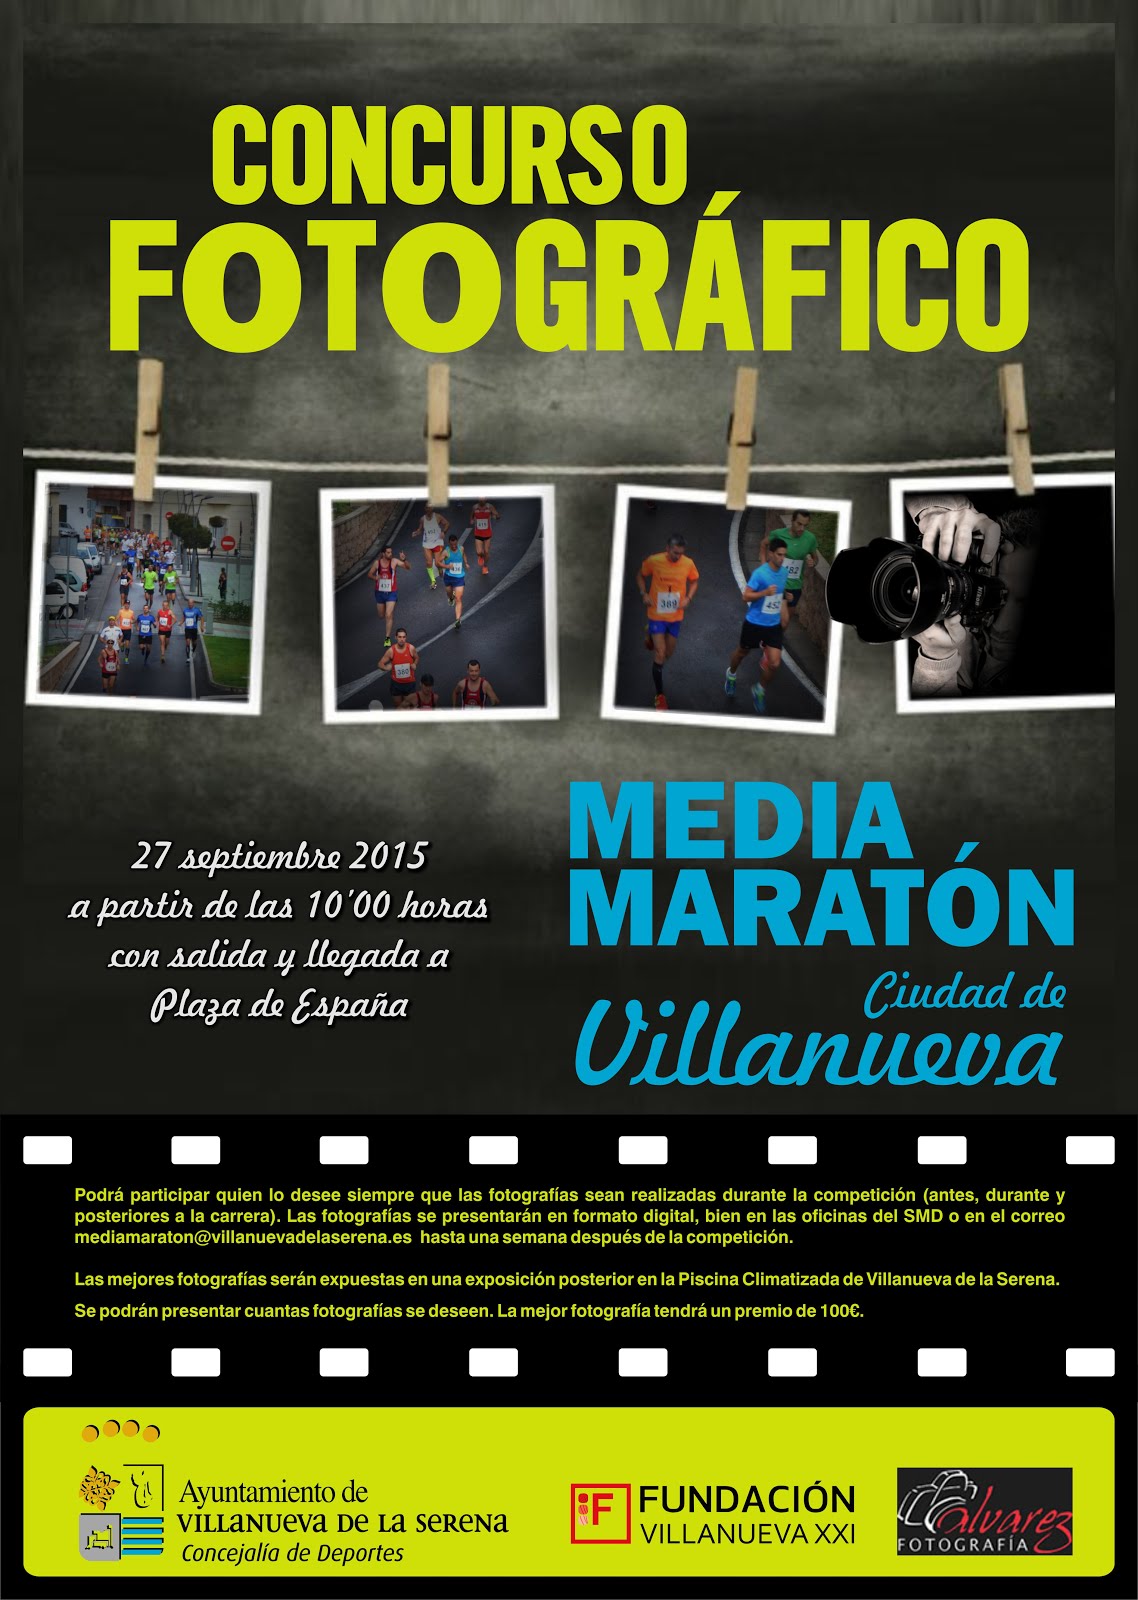 Concurso fotográfico Media Maratón Ciudad de Villanueva